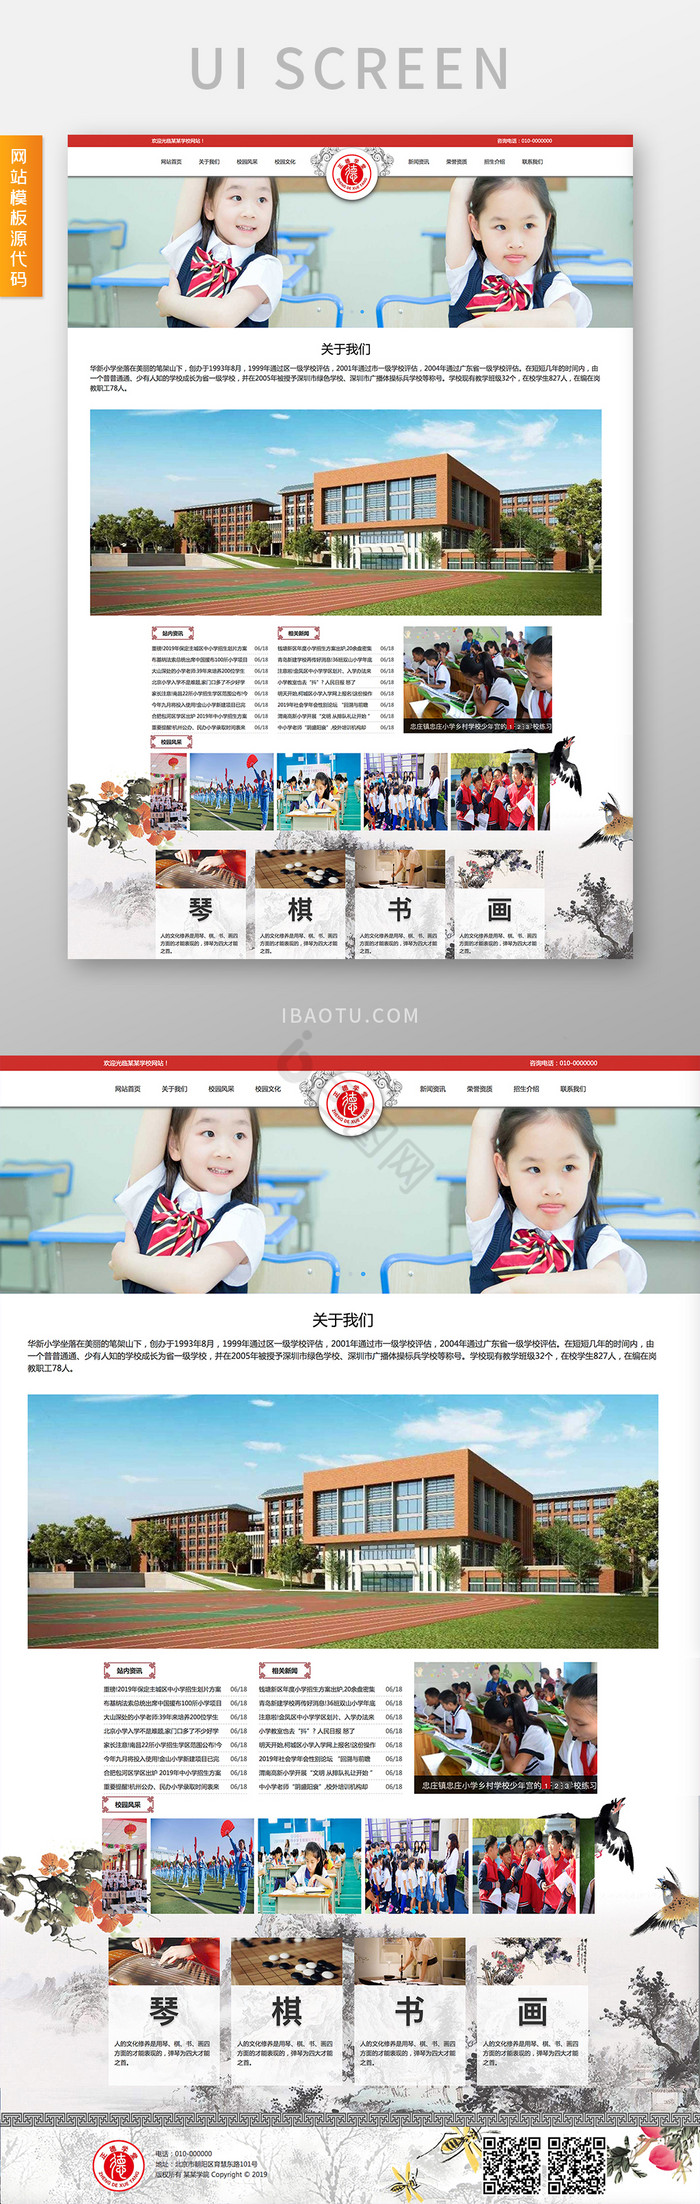 红色教育培训儿童交互动态全套网站源代码